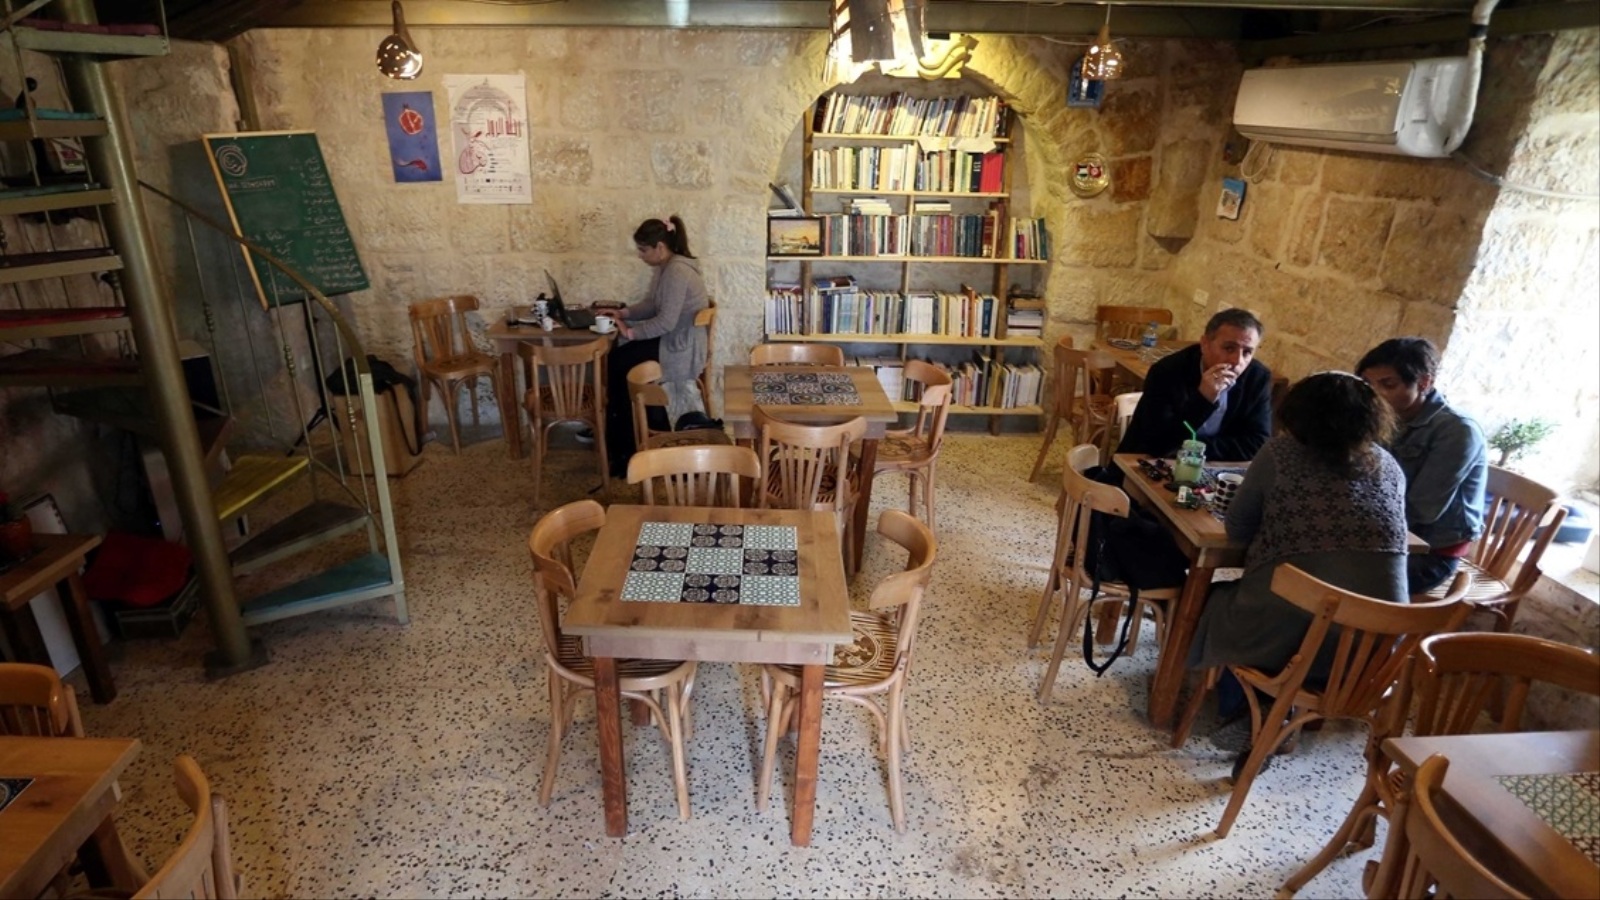 مقهى رمانة يشهد نشاطات فنية وموسيقية وأدبية ويستضيف كتابا وموسيقيين وشعراء(الأناضول)